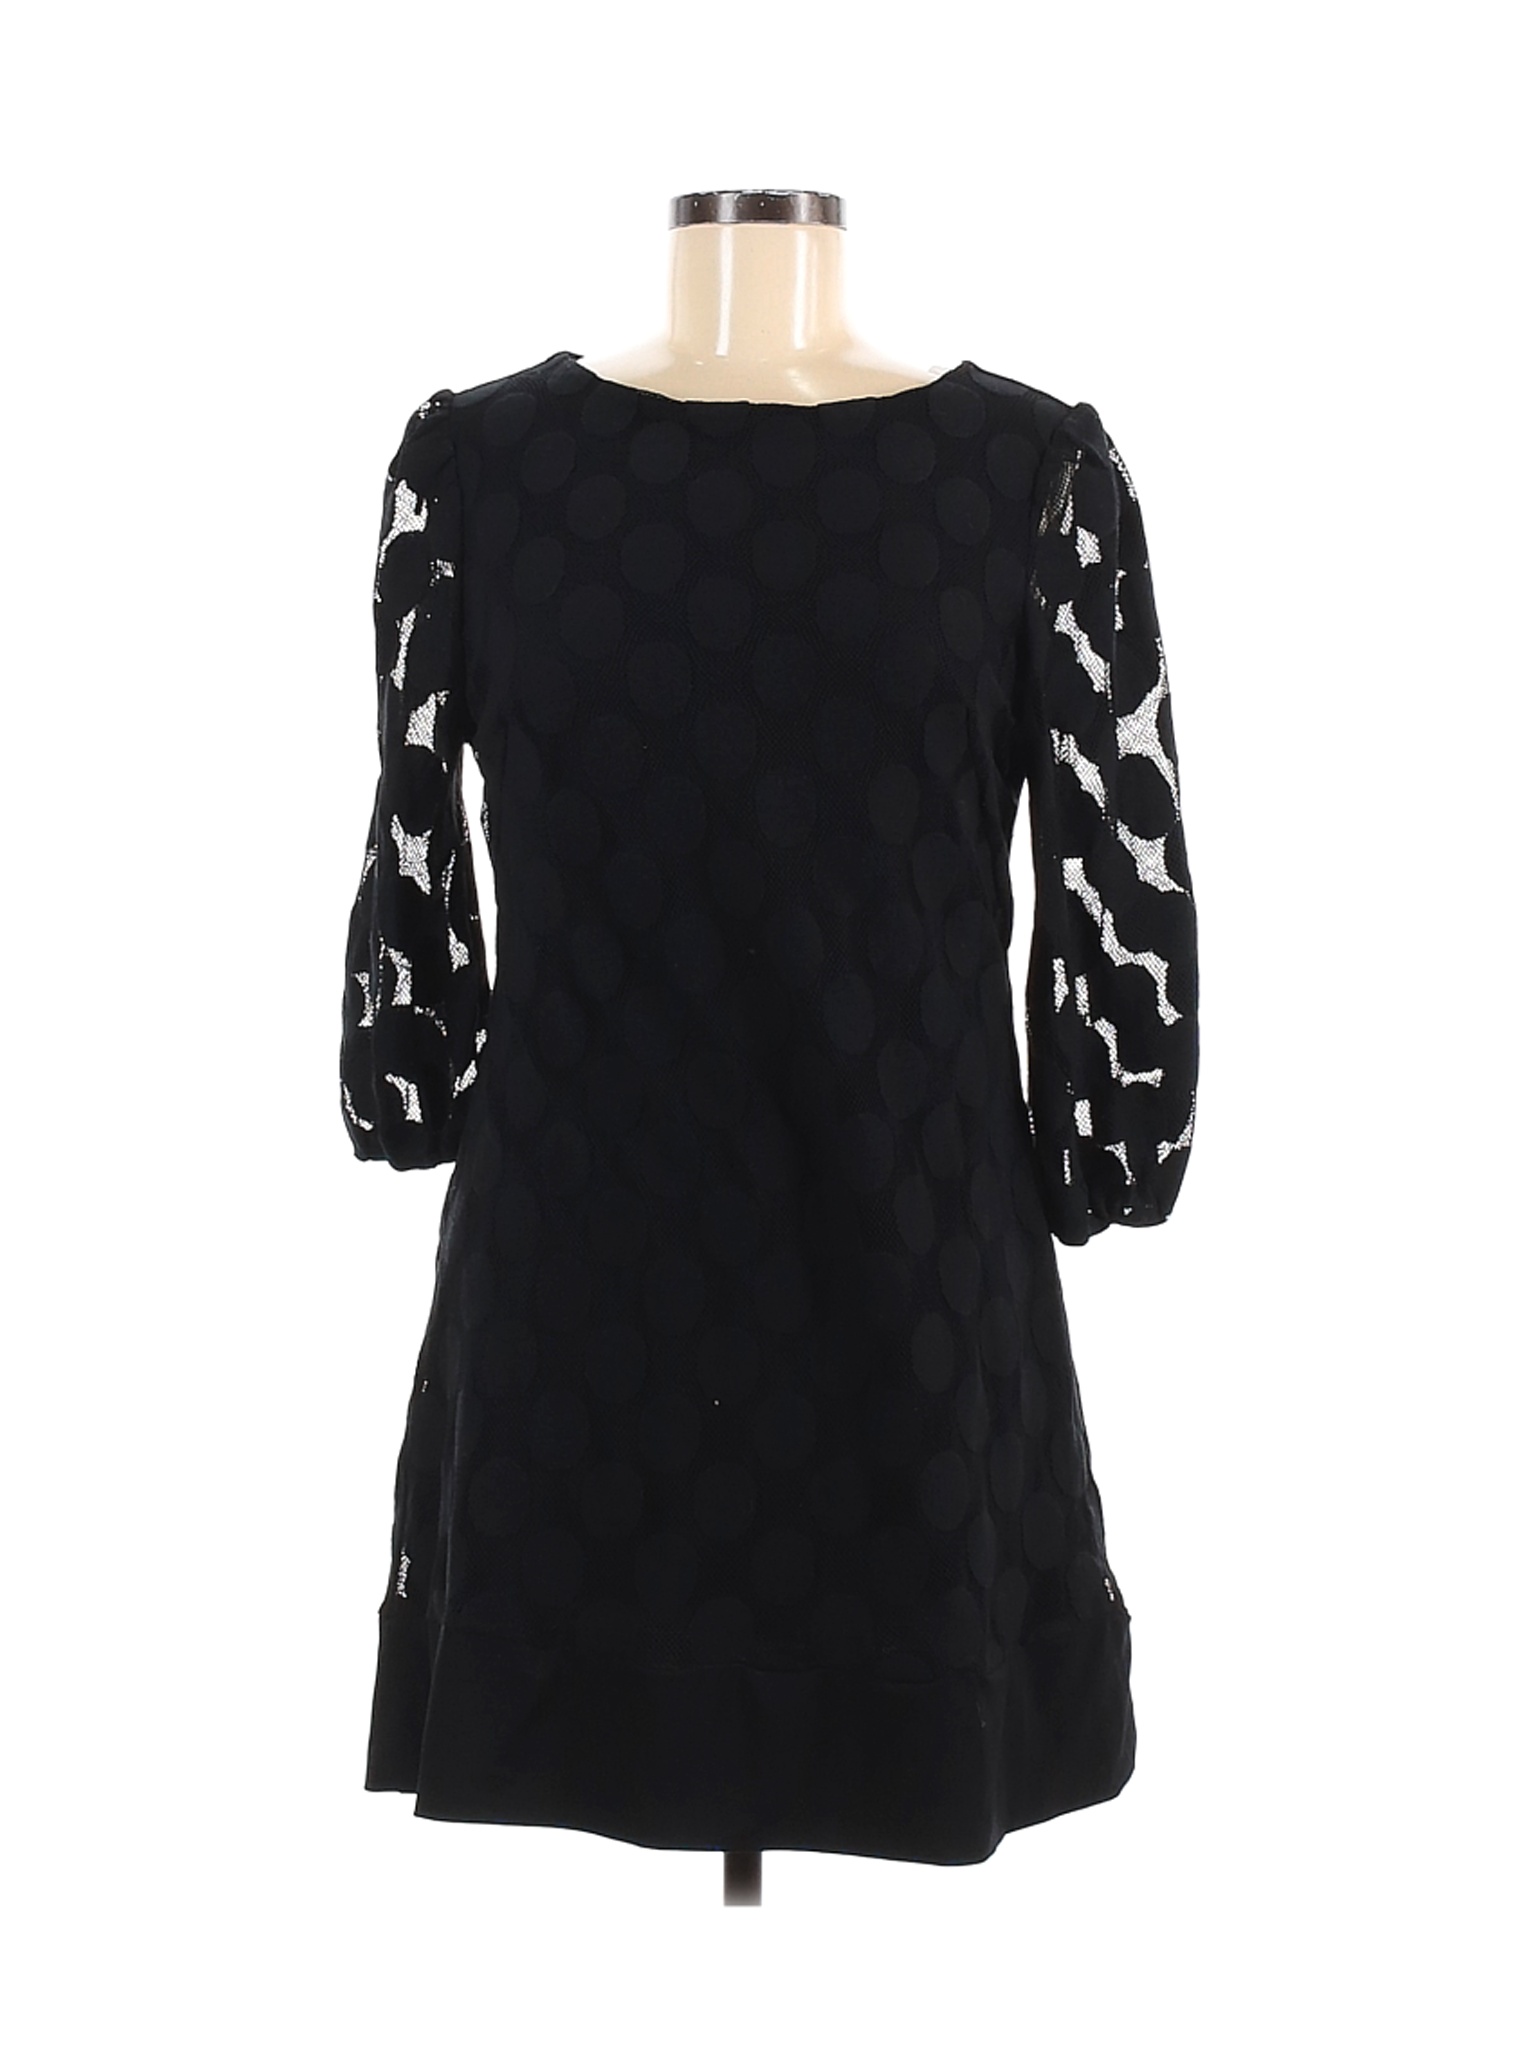 Style&Co Women Black Casual Dress M | eBay